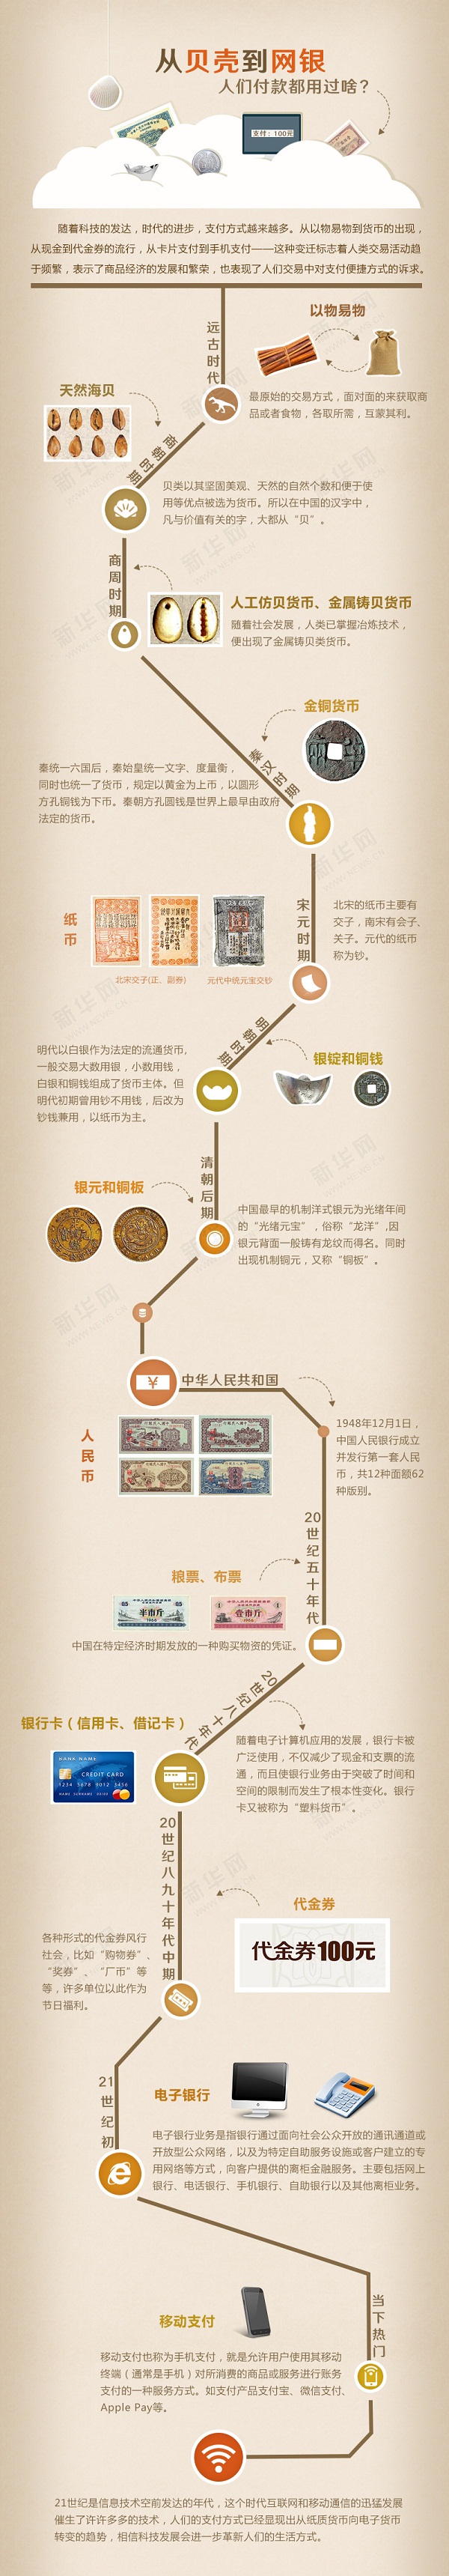 一张图看遍中国货币的演变和支付方式的发展